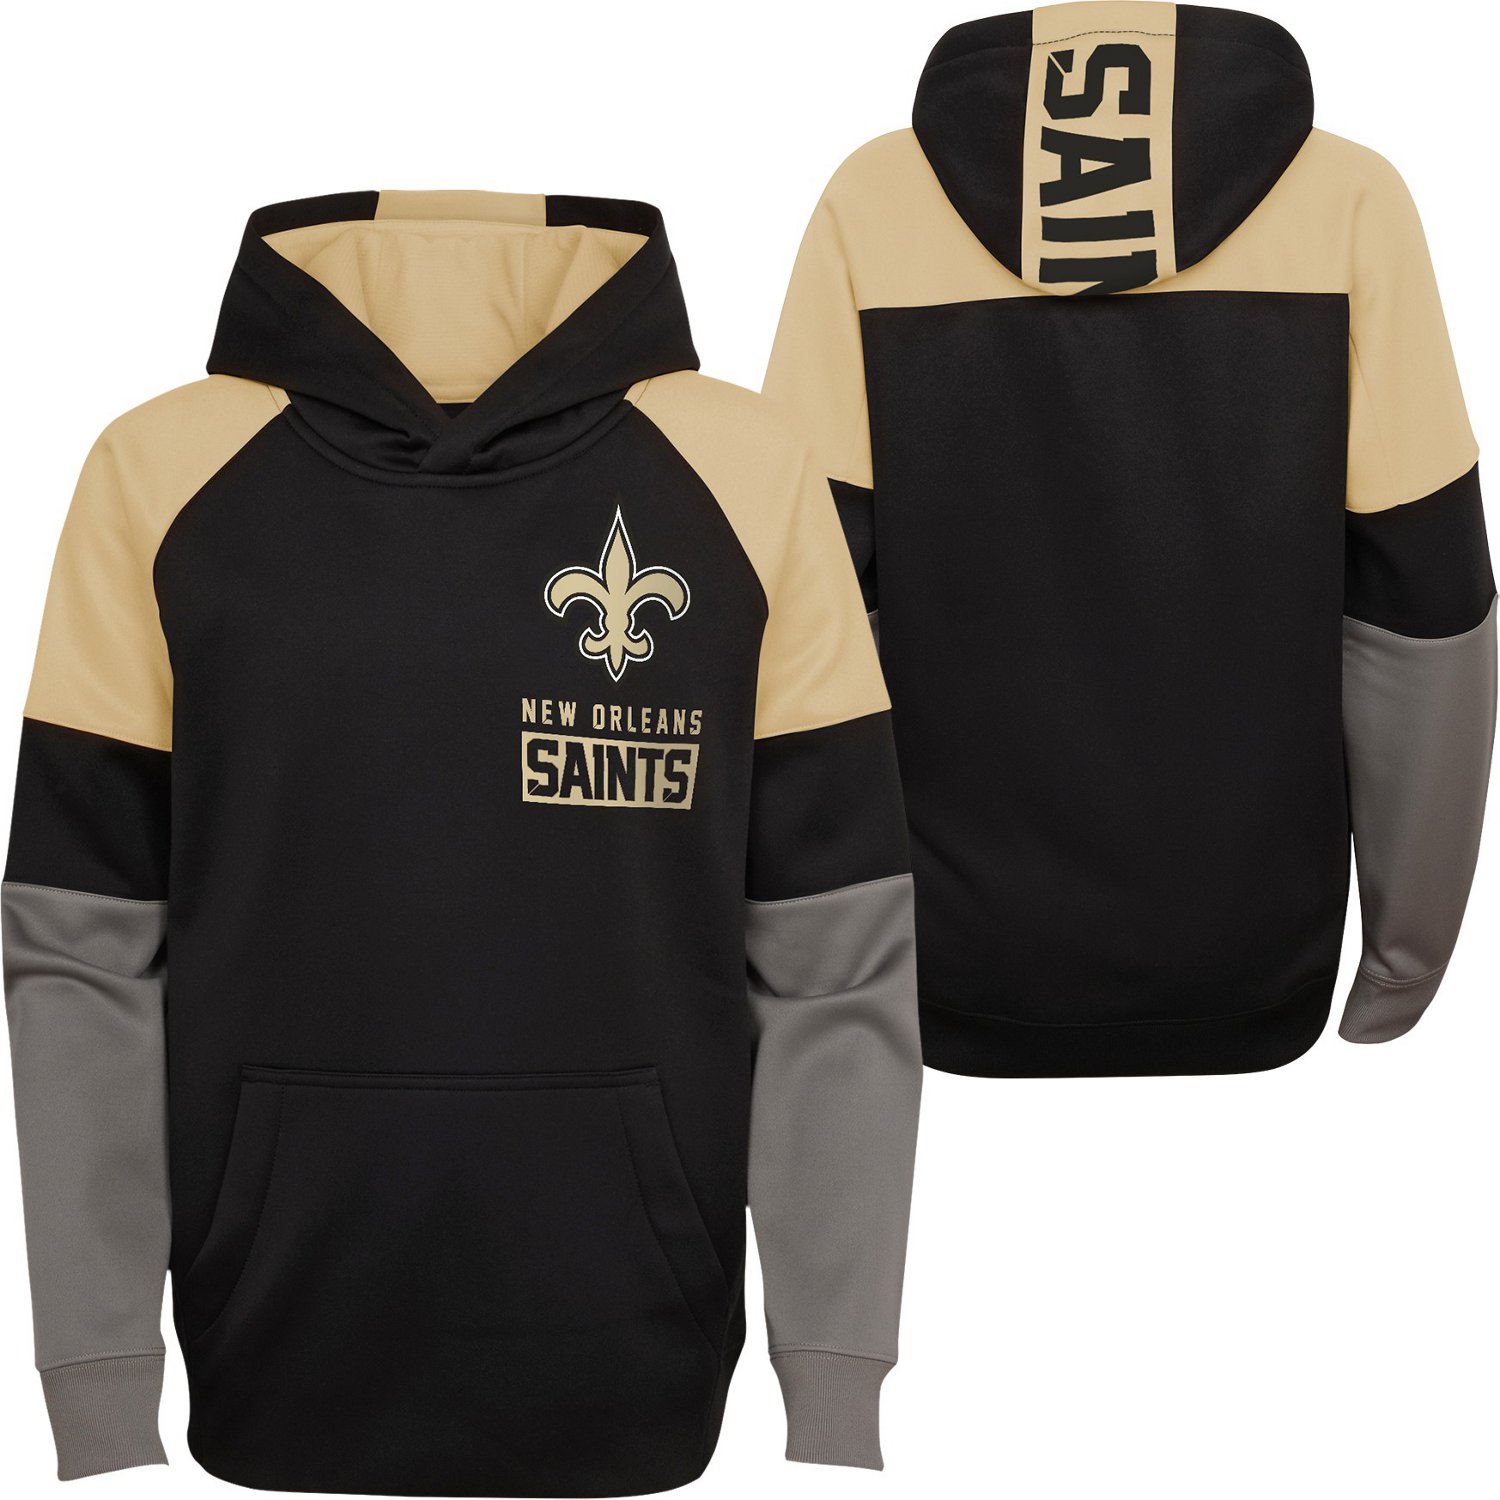 New Orleans Saints Hoodie Football Hooded Sweatshirt Pullover Casual Jacket 